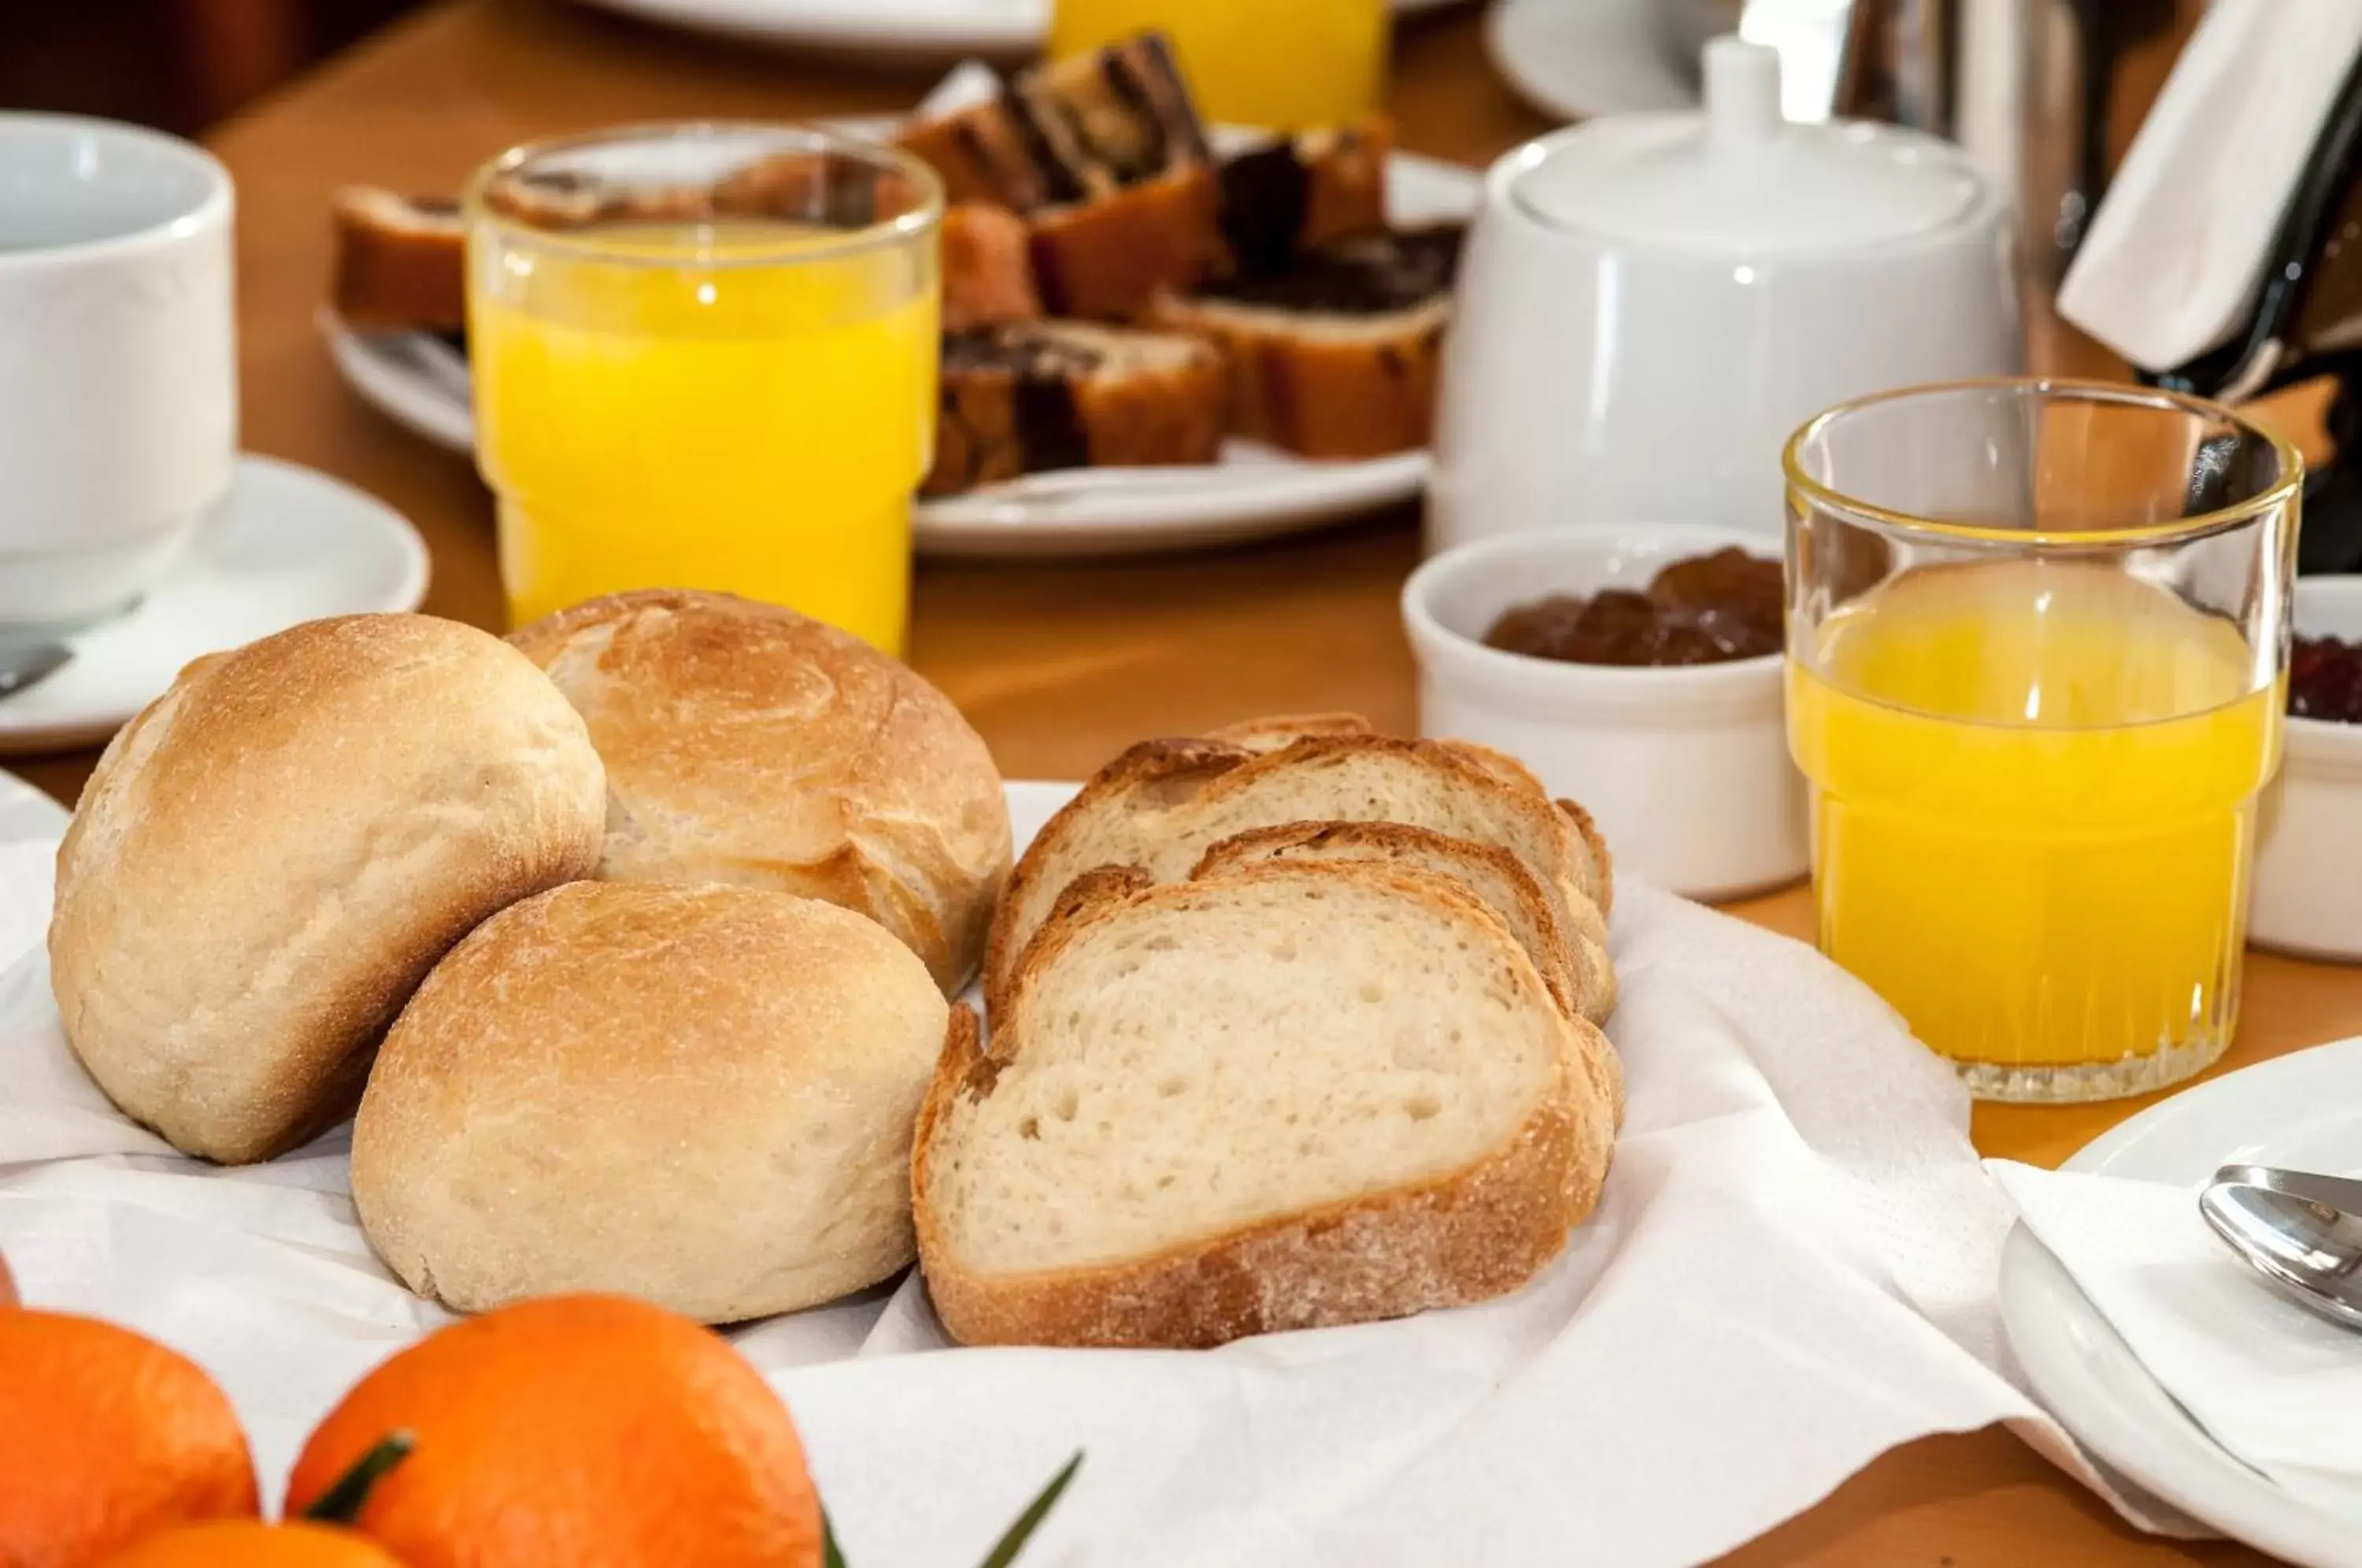 Buffet breakfast, Breakfast in Cecil Hotel